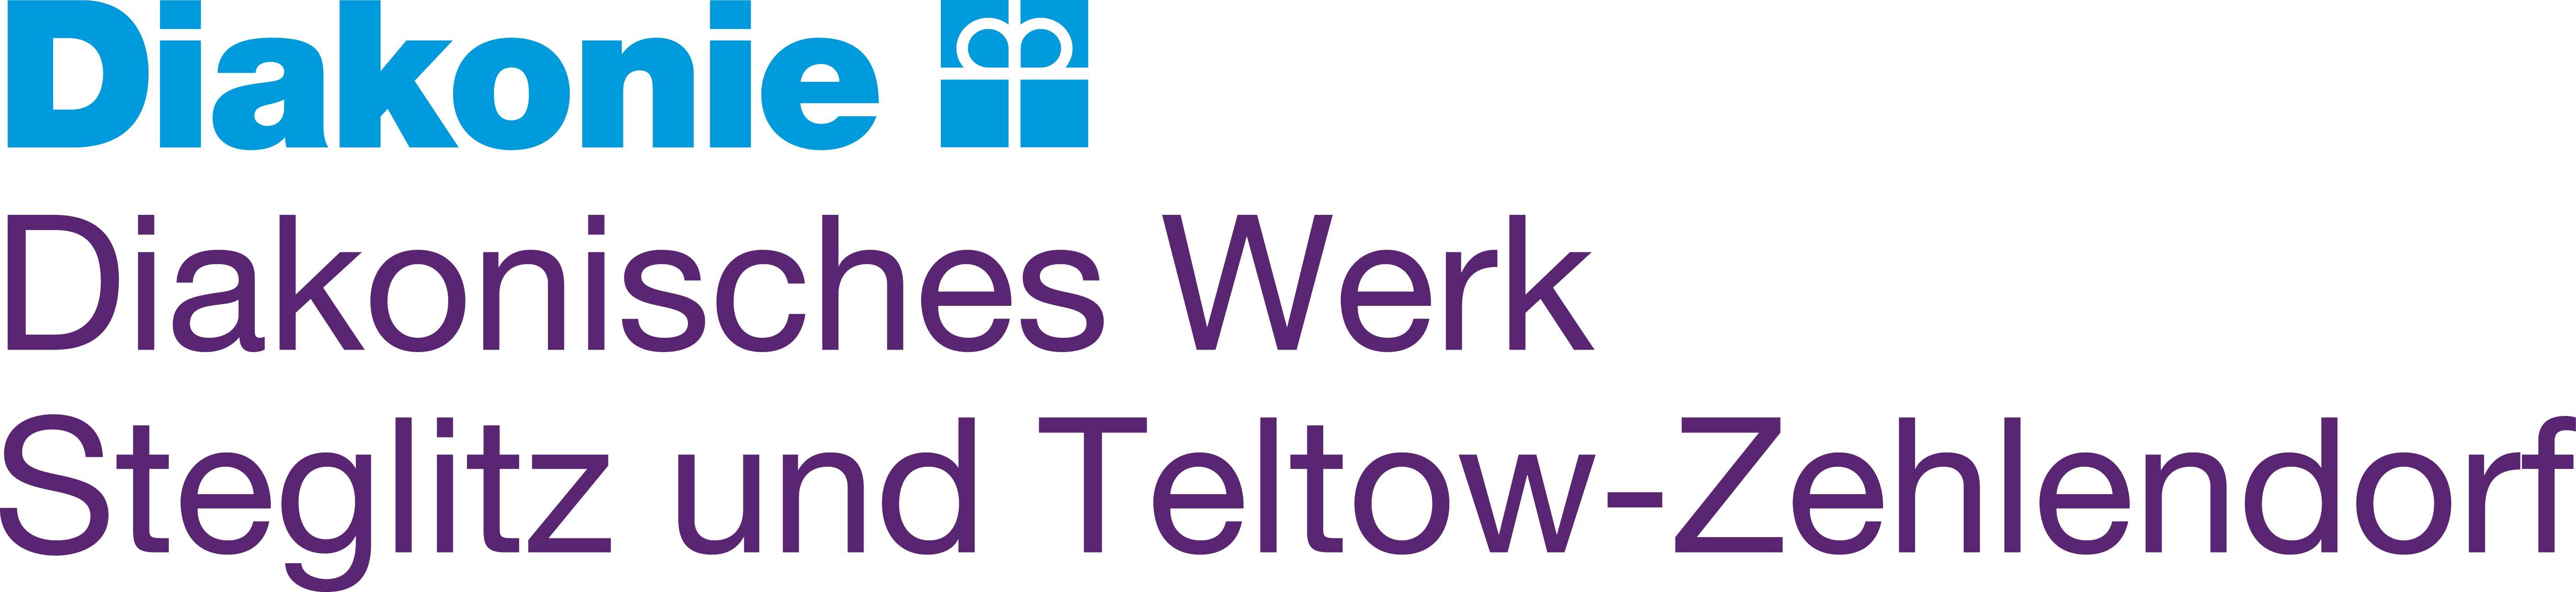 Logo: Diakonisches Werk Steglitz und Teltow-Zehlendorf e. V. 